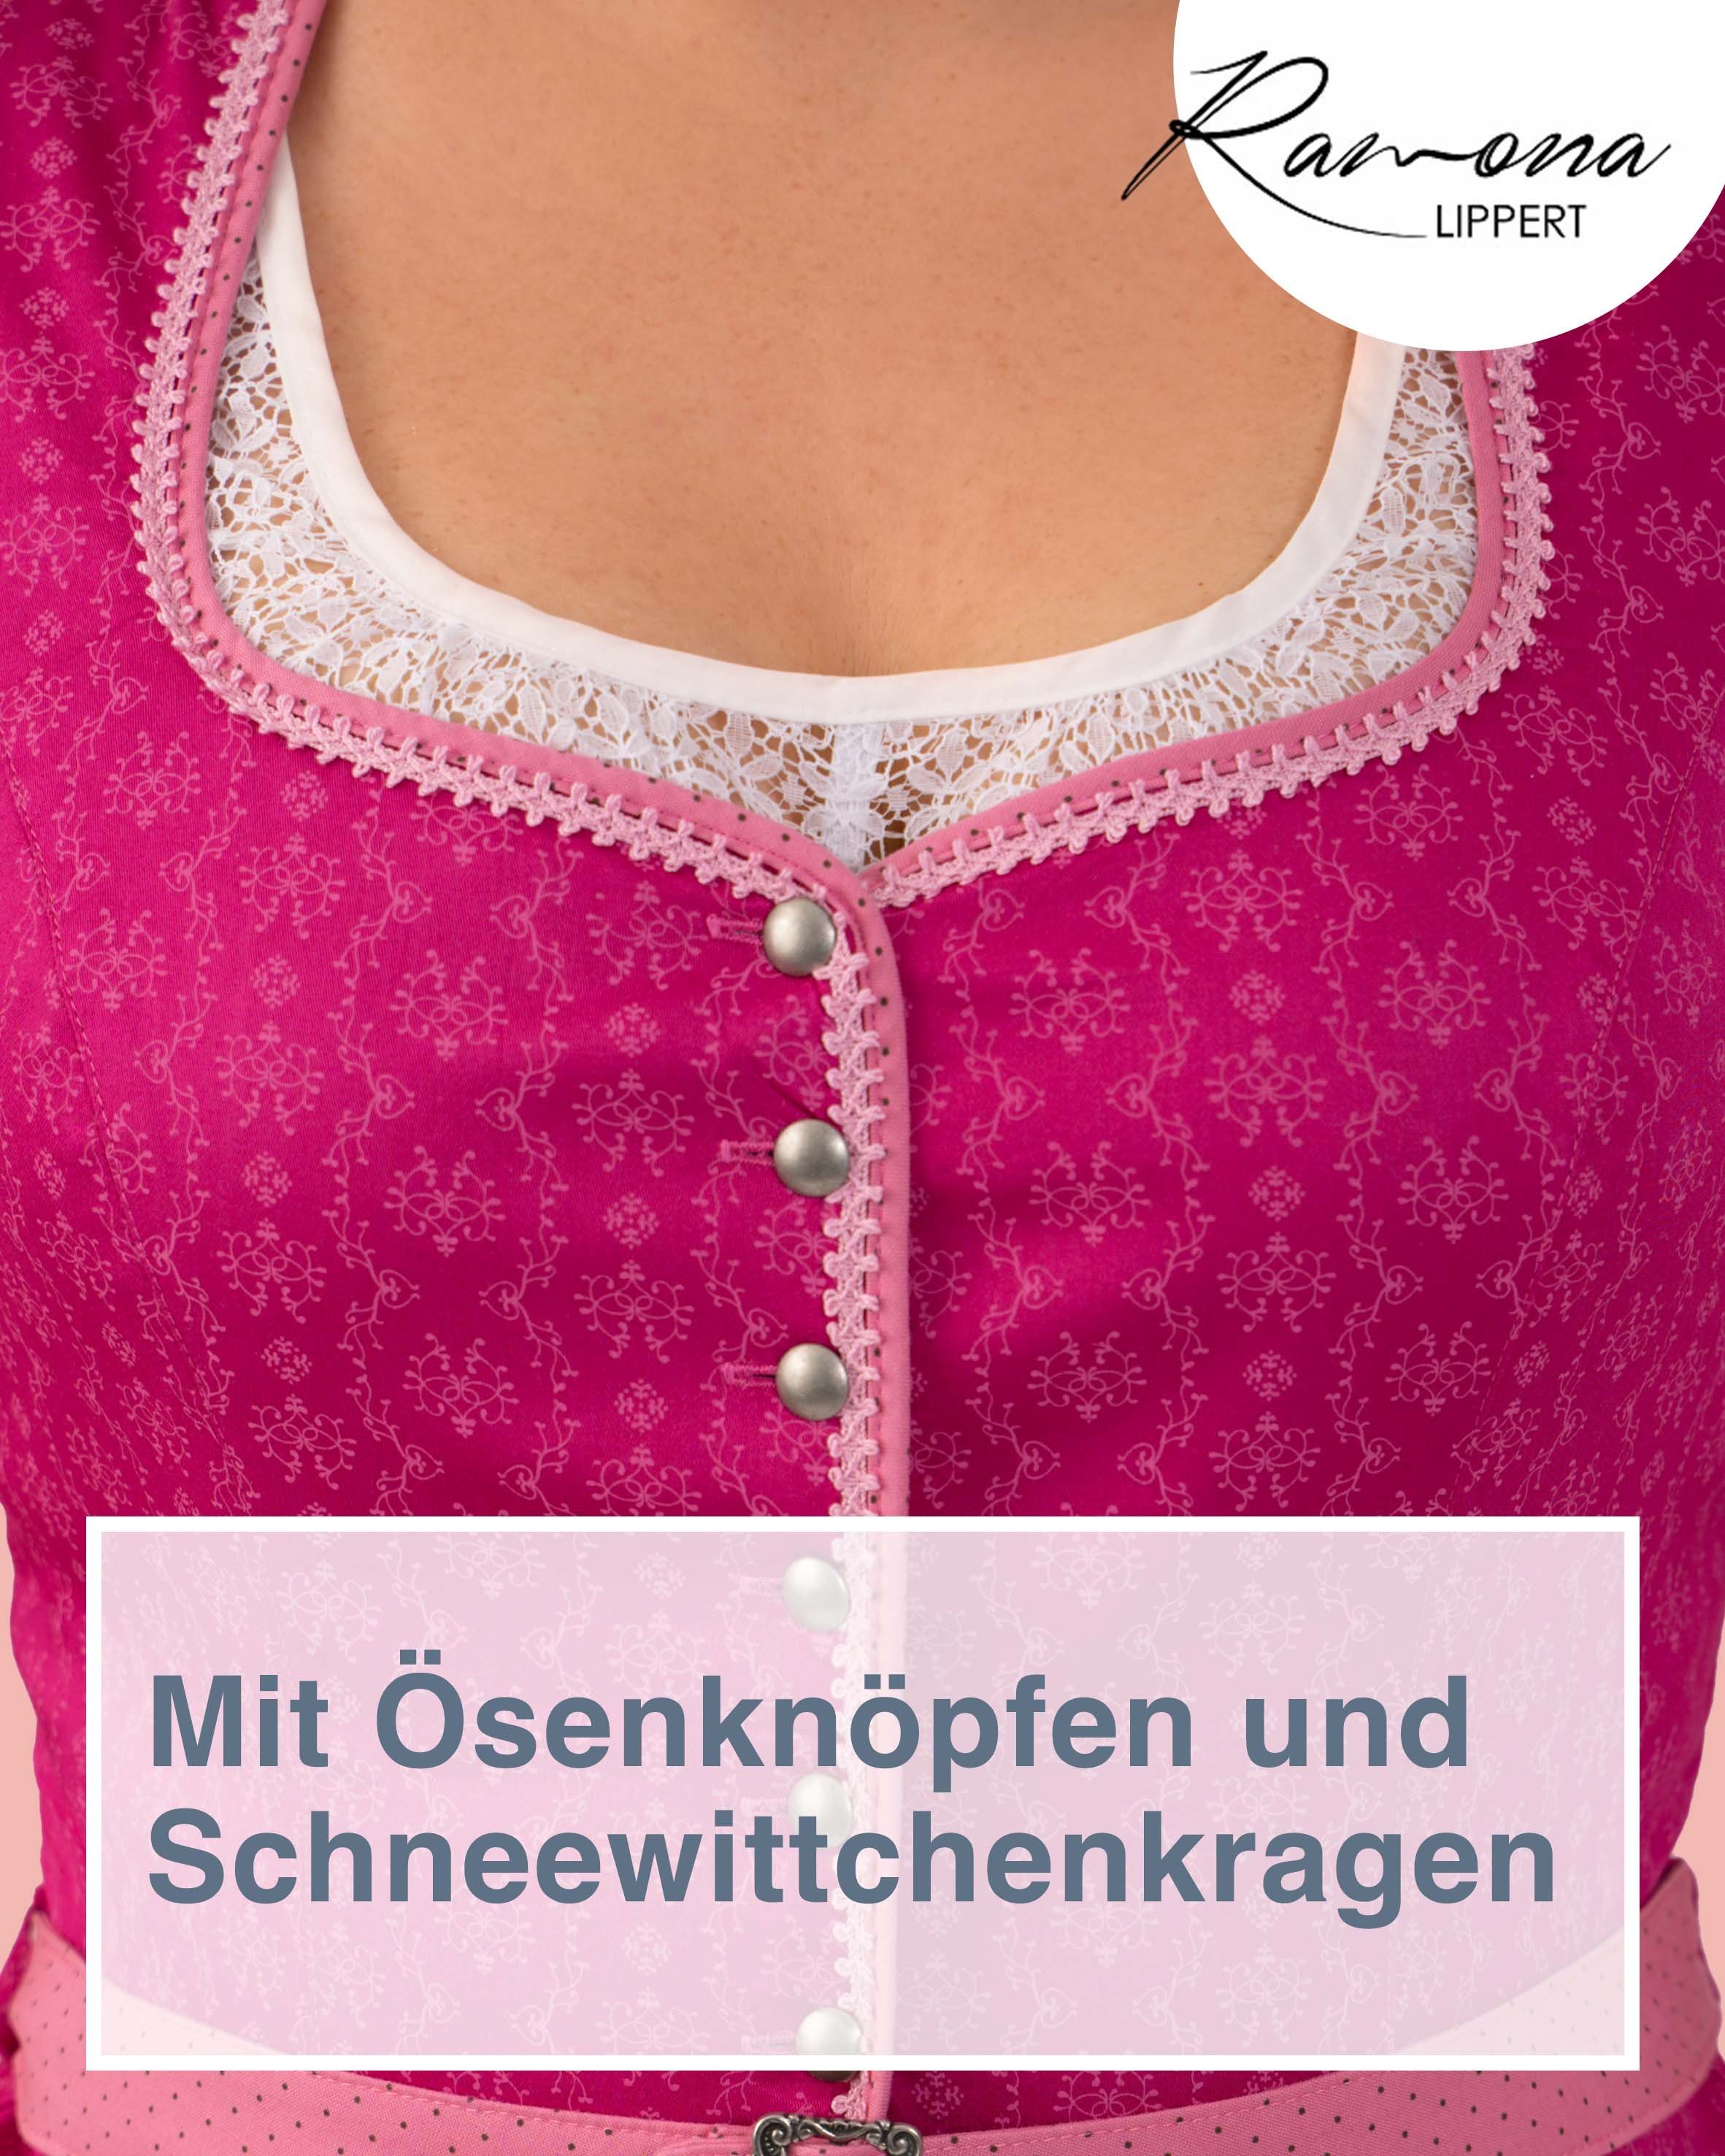 Ramona Lippert Trachtenbluse Mieder Nicole Knöpfe pink cm mit Gürtel Rückenlänge 51